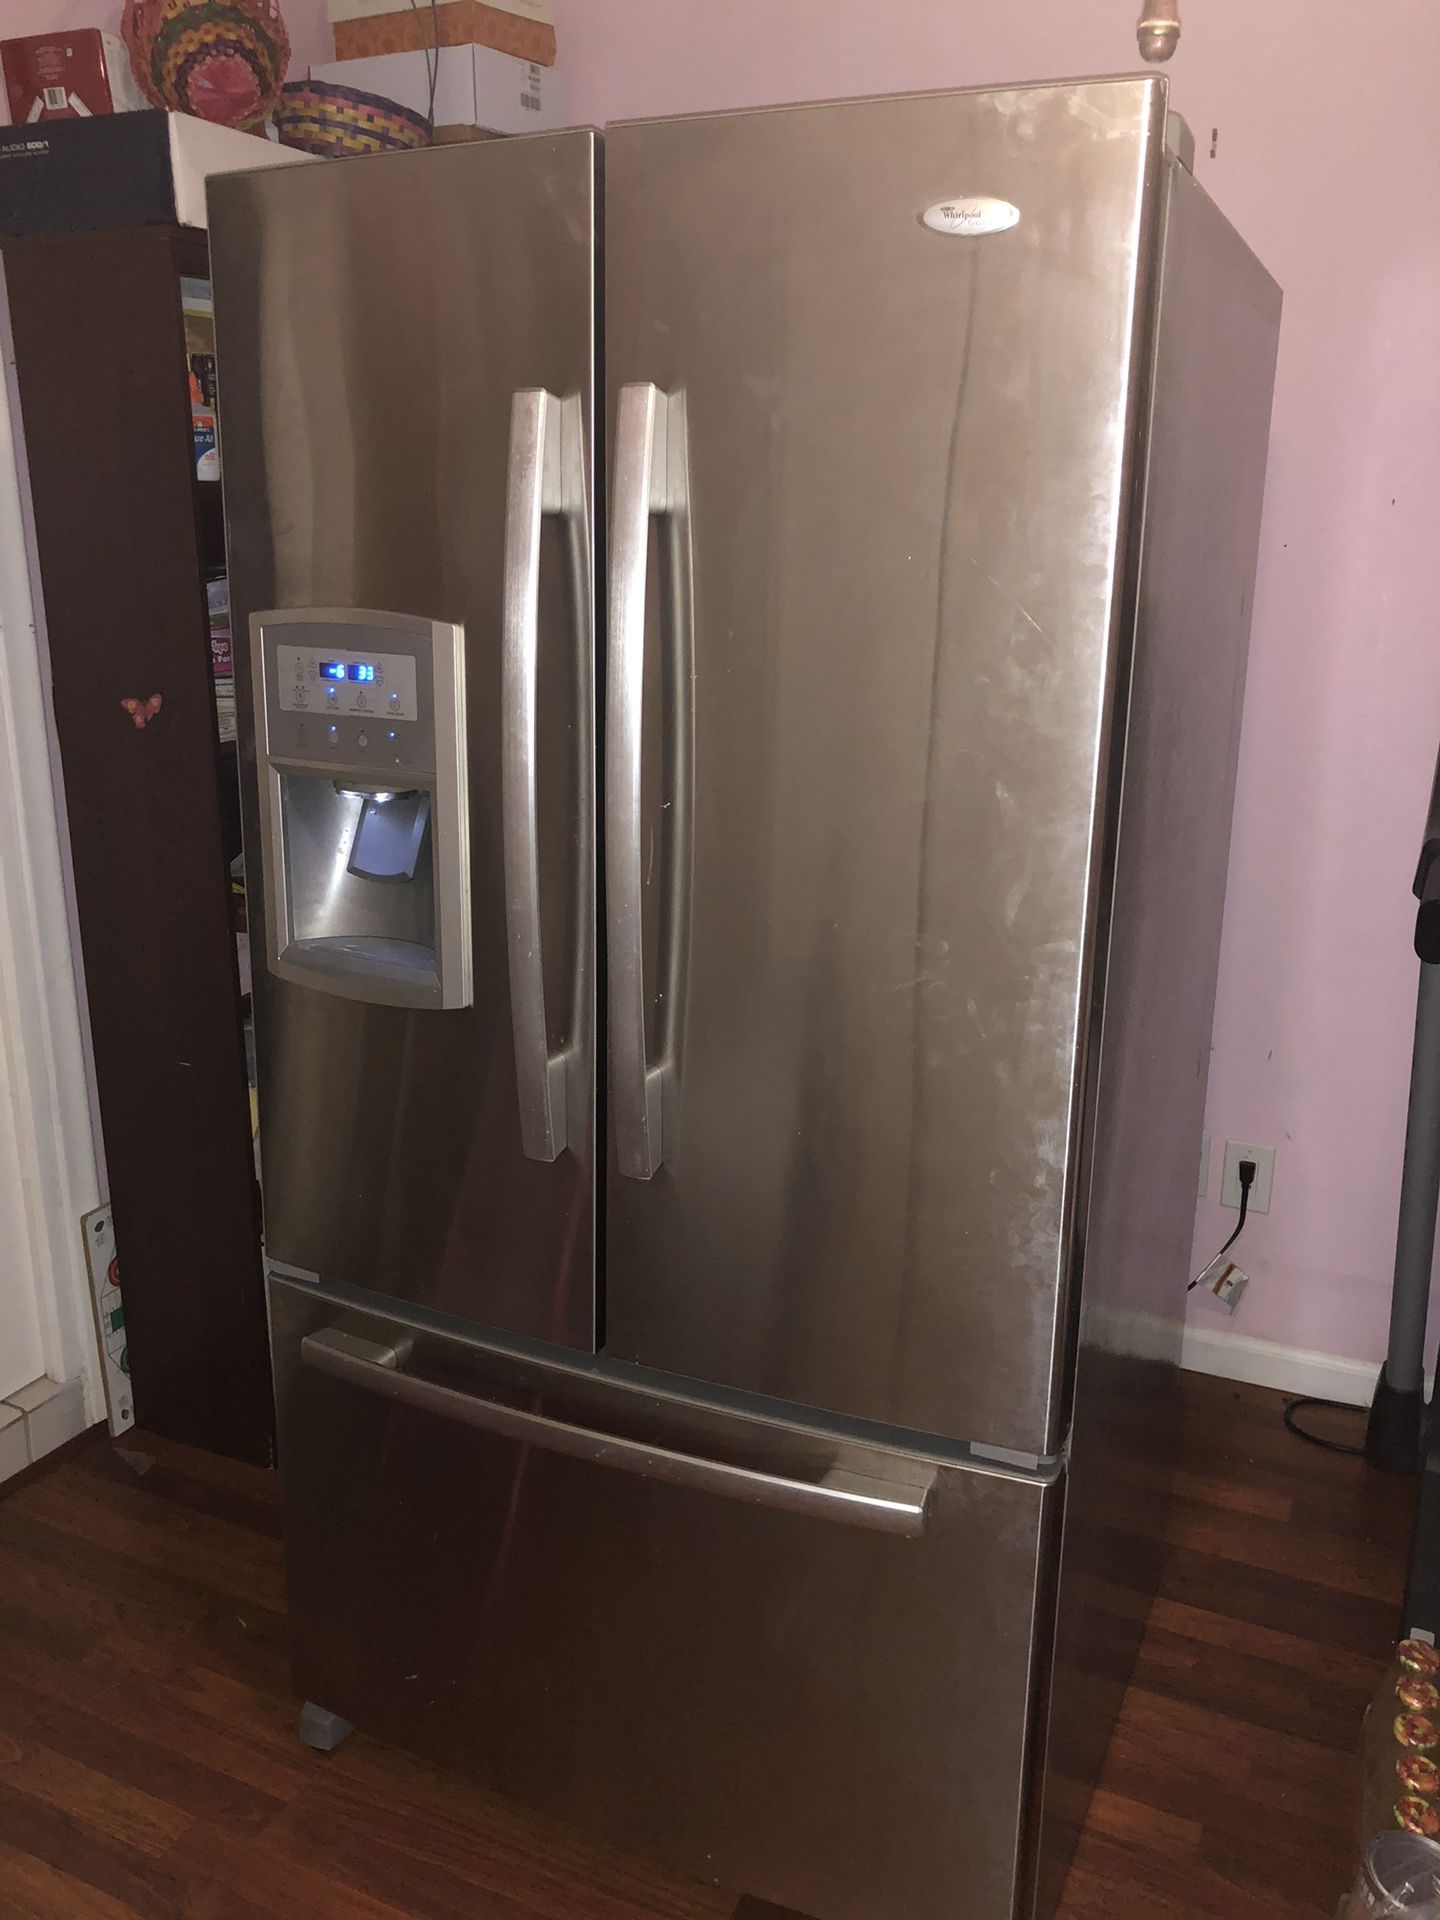 Whirlpool French Door Refrigerator - Broken